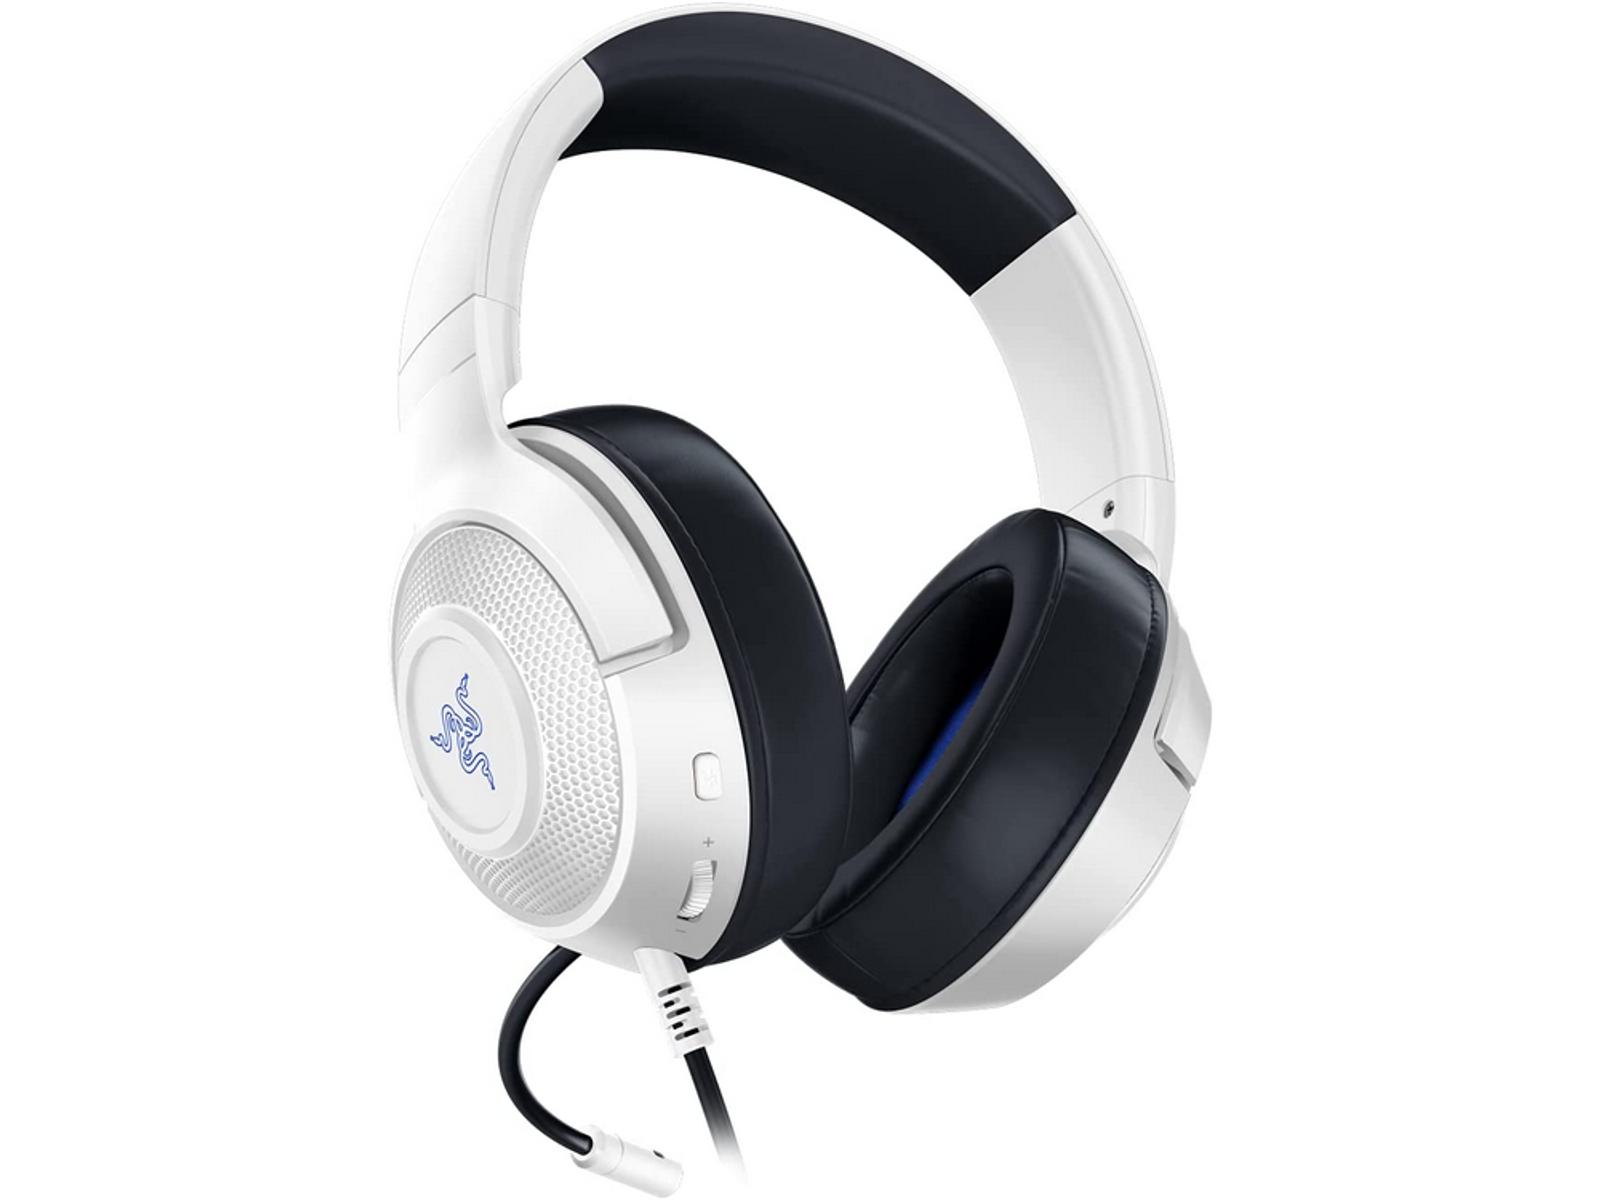 KRAKEN RAZER CONSOLE Weiß/Blau FOR Gaming Over-ear RZ04-02890500-R3M1 Headset X WHITE,